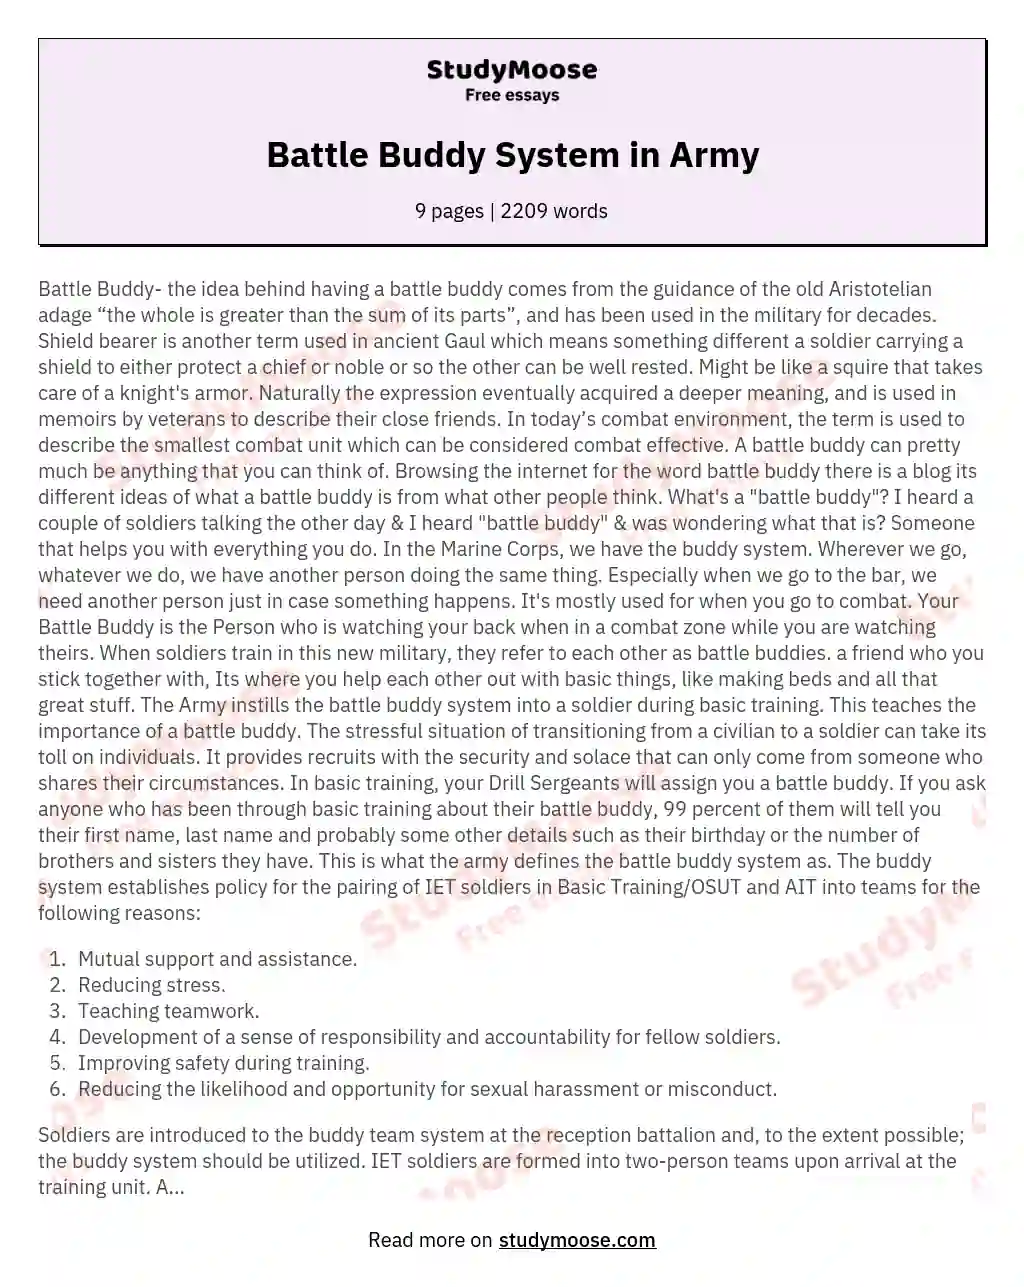 Battle Buddy System in Army